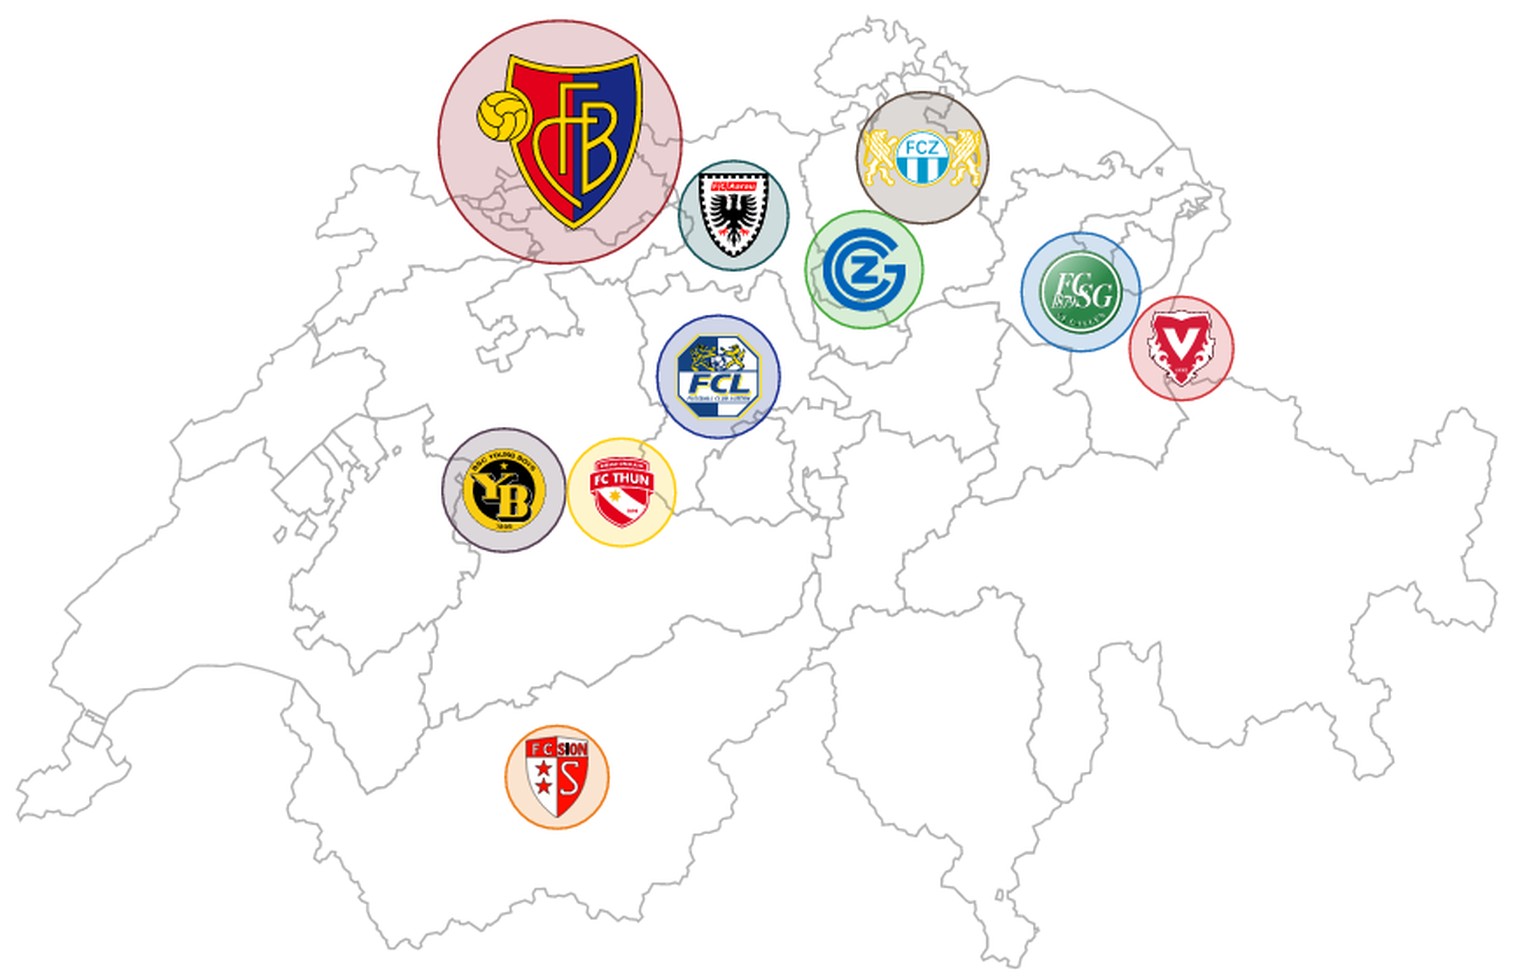 Die Fans und Follower auf Facebook, Twitter und Youtube der zehn Super-League-Klubs grafisch dargestellt.